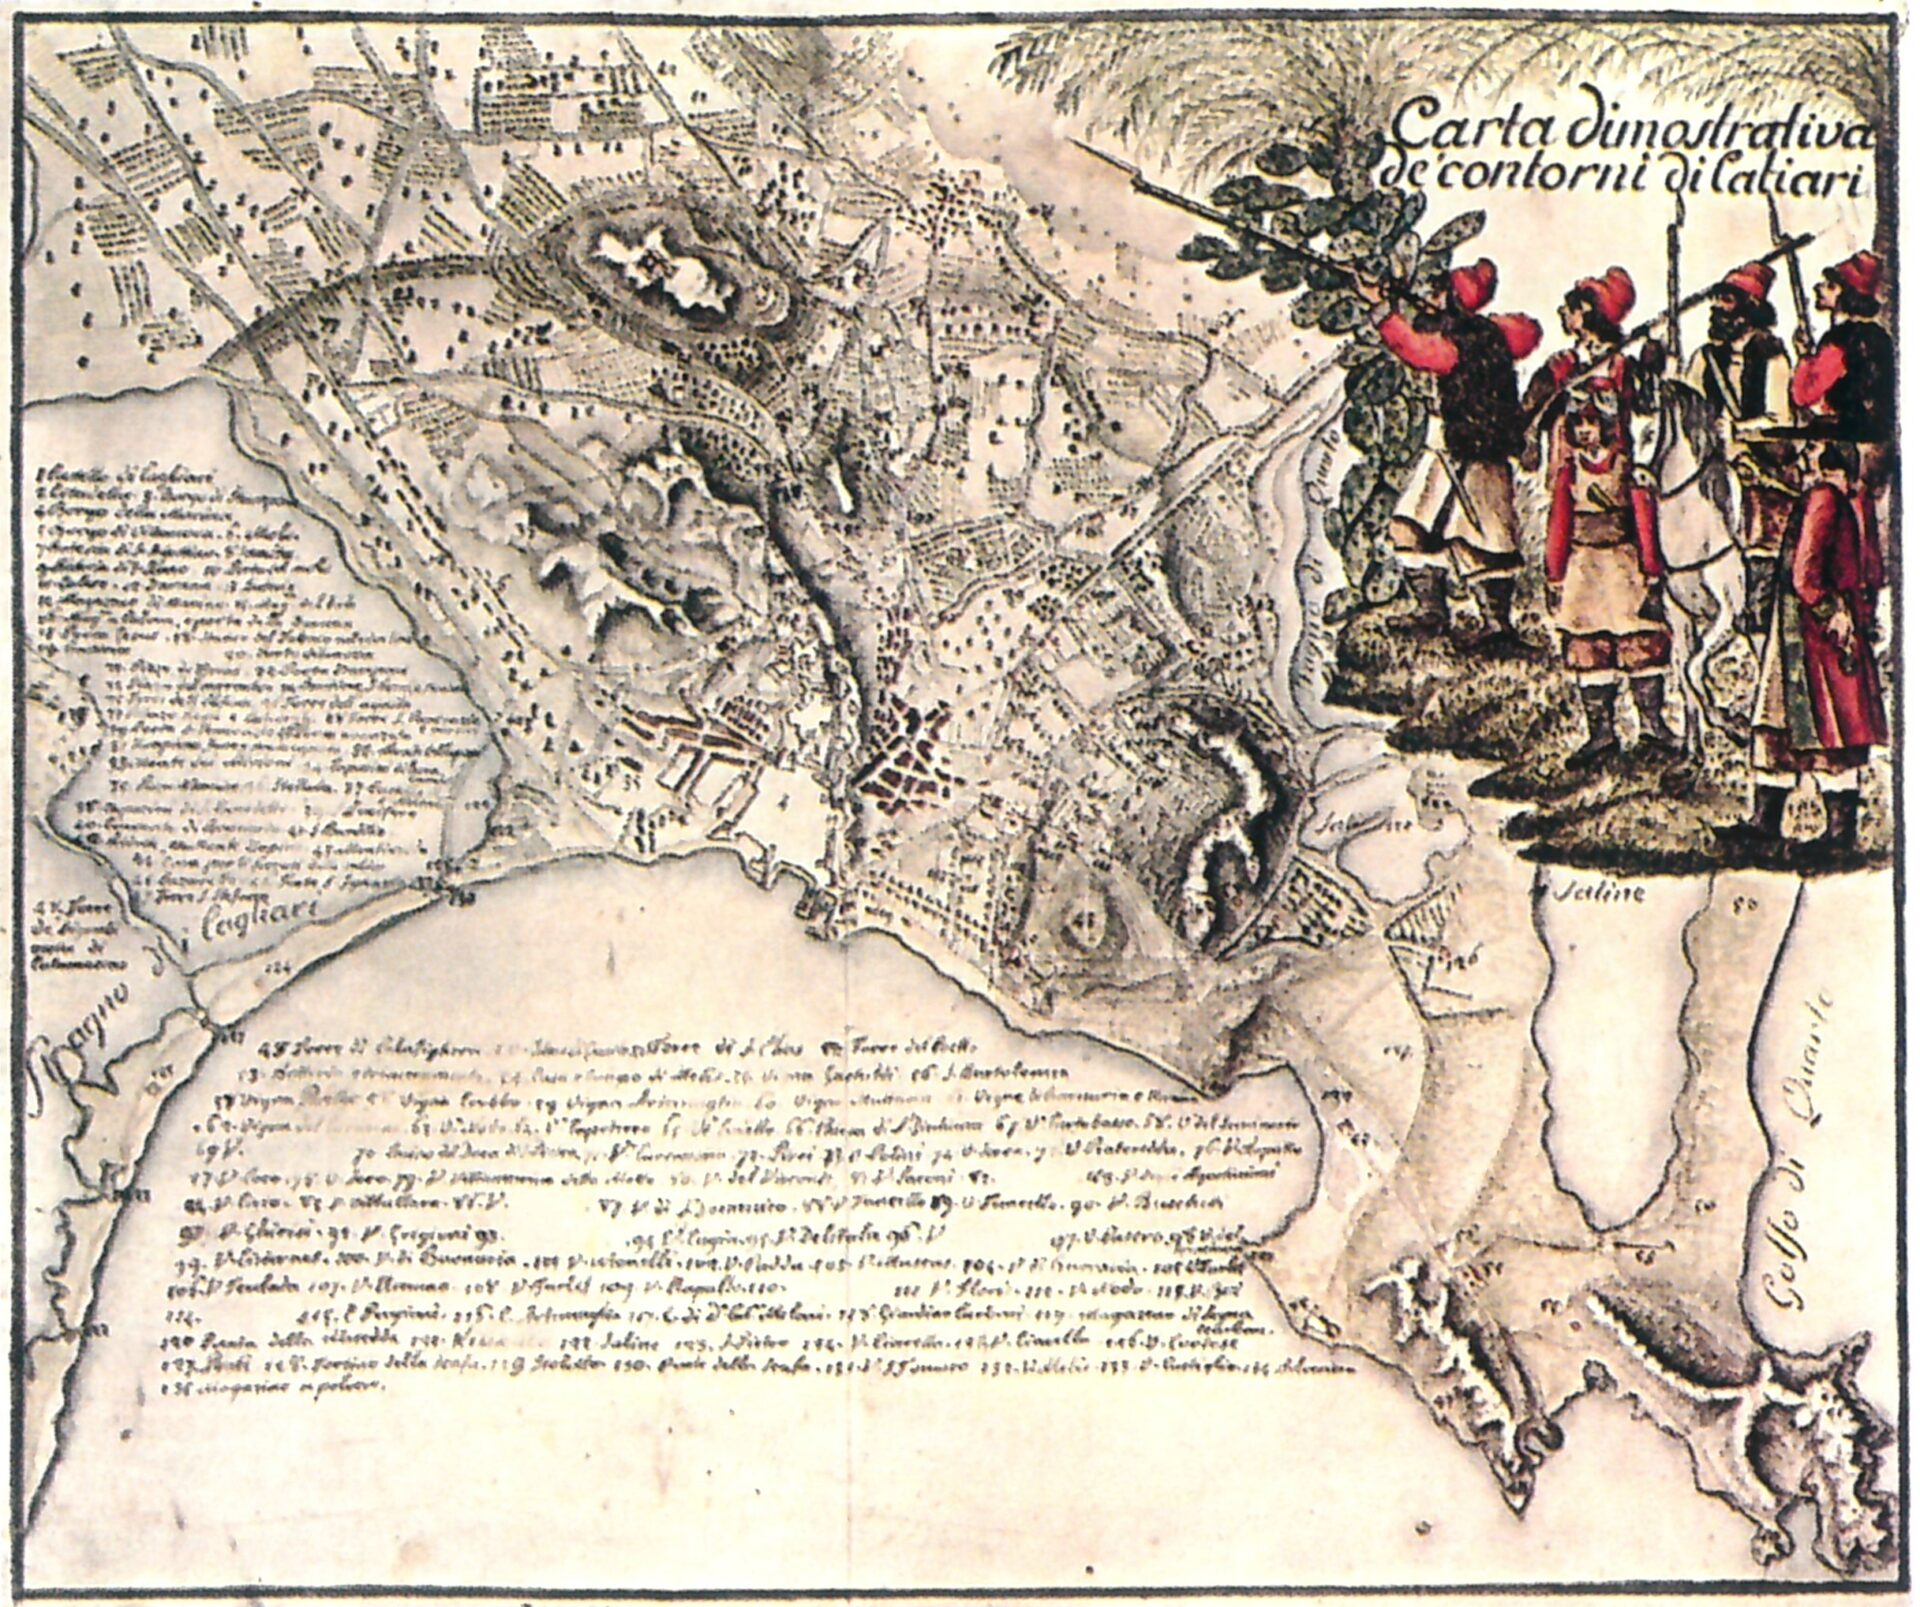 Fig. 1 L.Piloni, Carte geografiche della Sardegna, editrice sarda Fossataro, Cagliari, 1974, Tav. 147